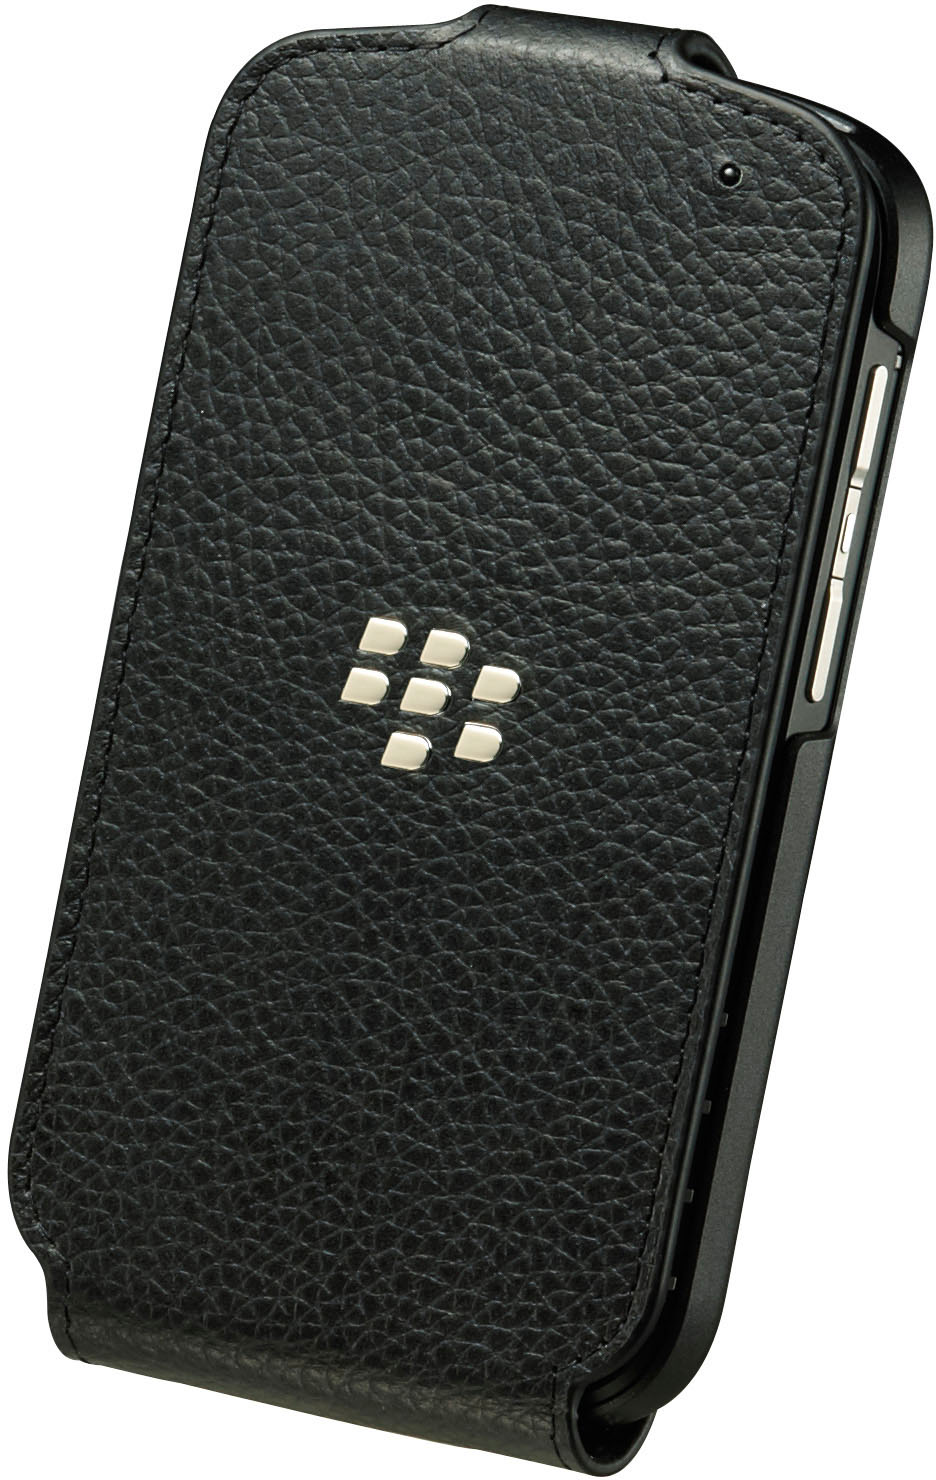 Flip Cover Schwarz BLACKBERRY für Q10 Blackberry, Q10, schwarz, Leder